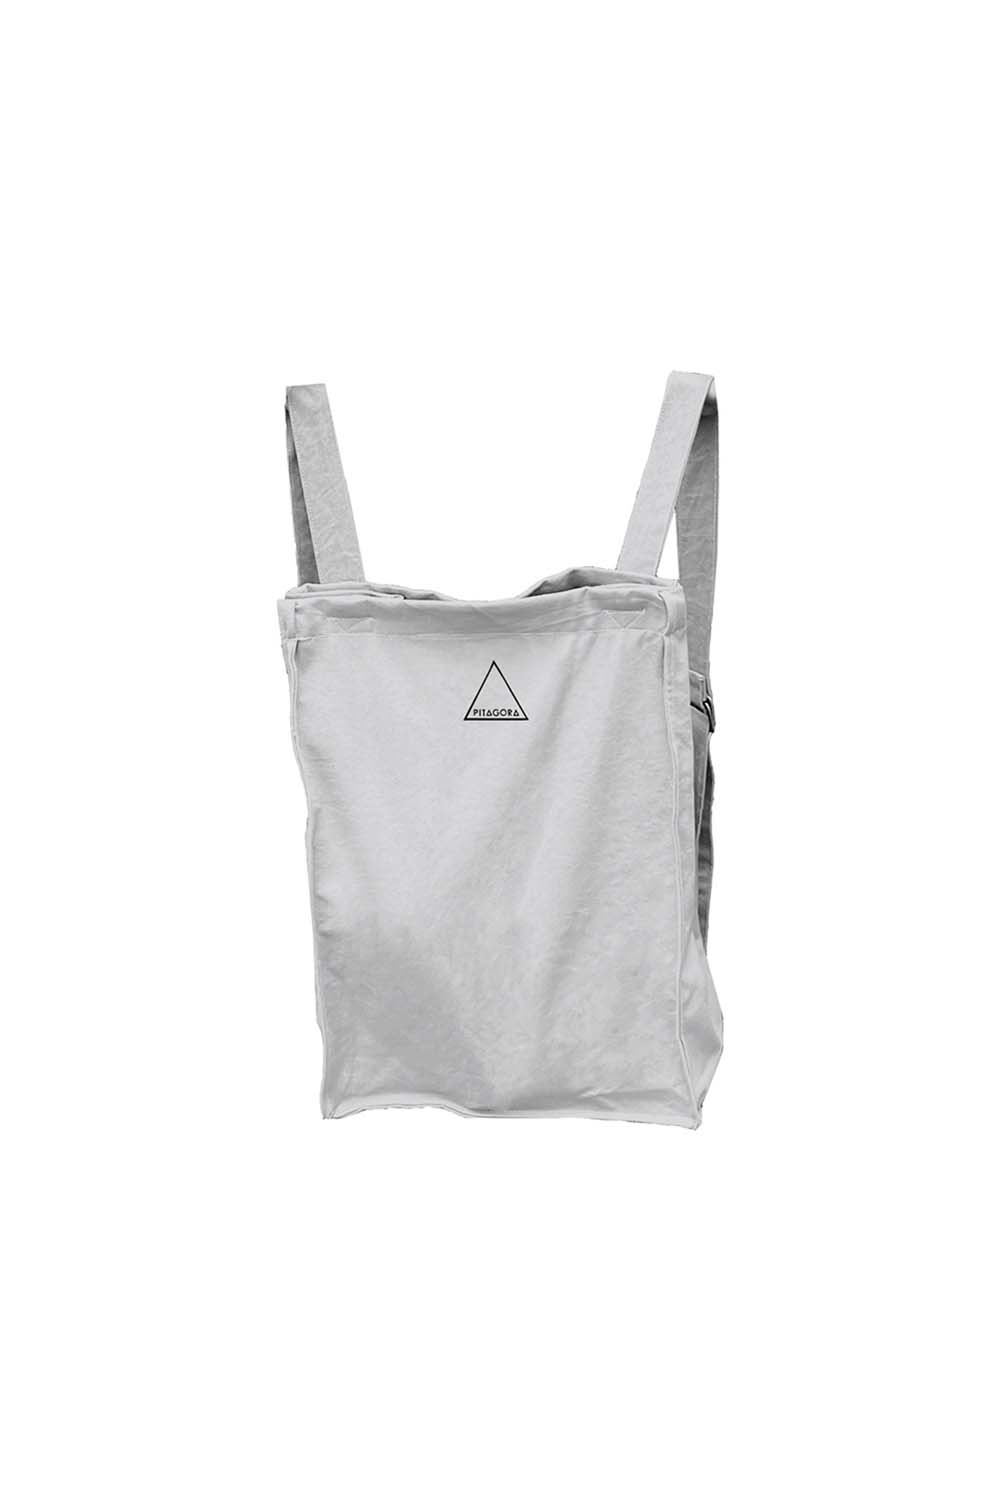 mochila gris en algodón orgánico reciclado